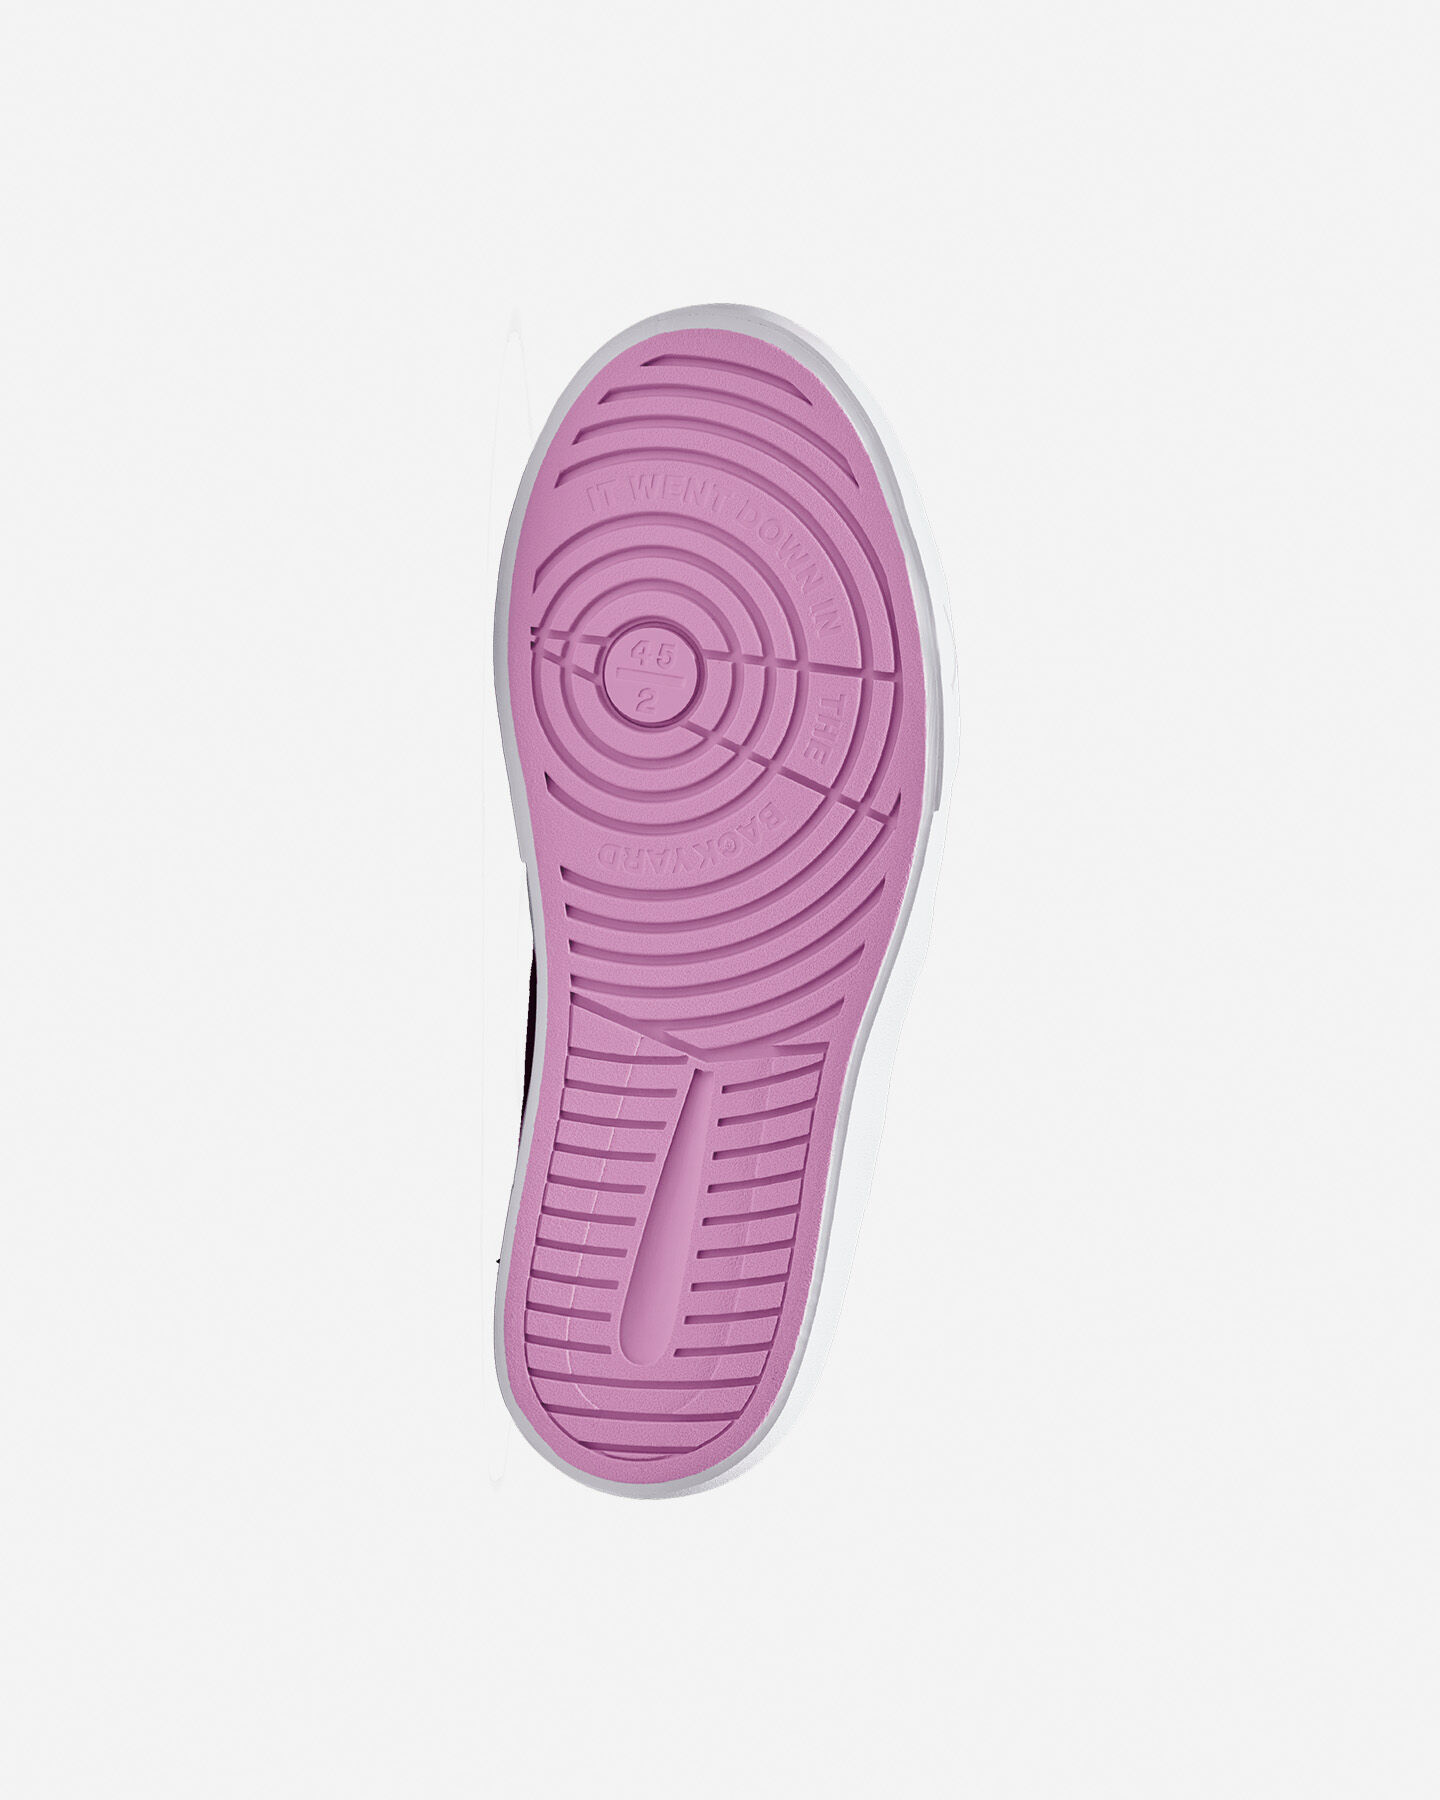  Scarpe sneakers NIKE JORDAN SERIES GS JR S5531503|505|4Y scatto 2